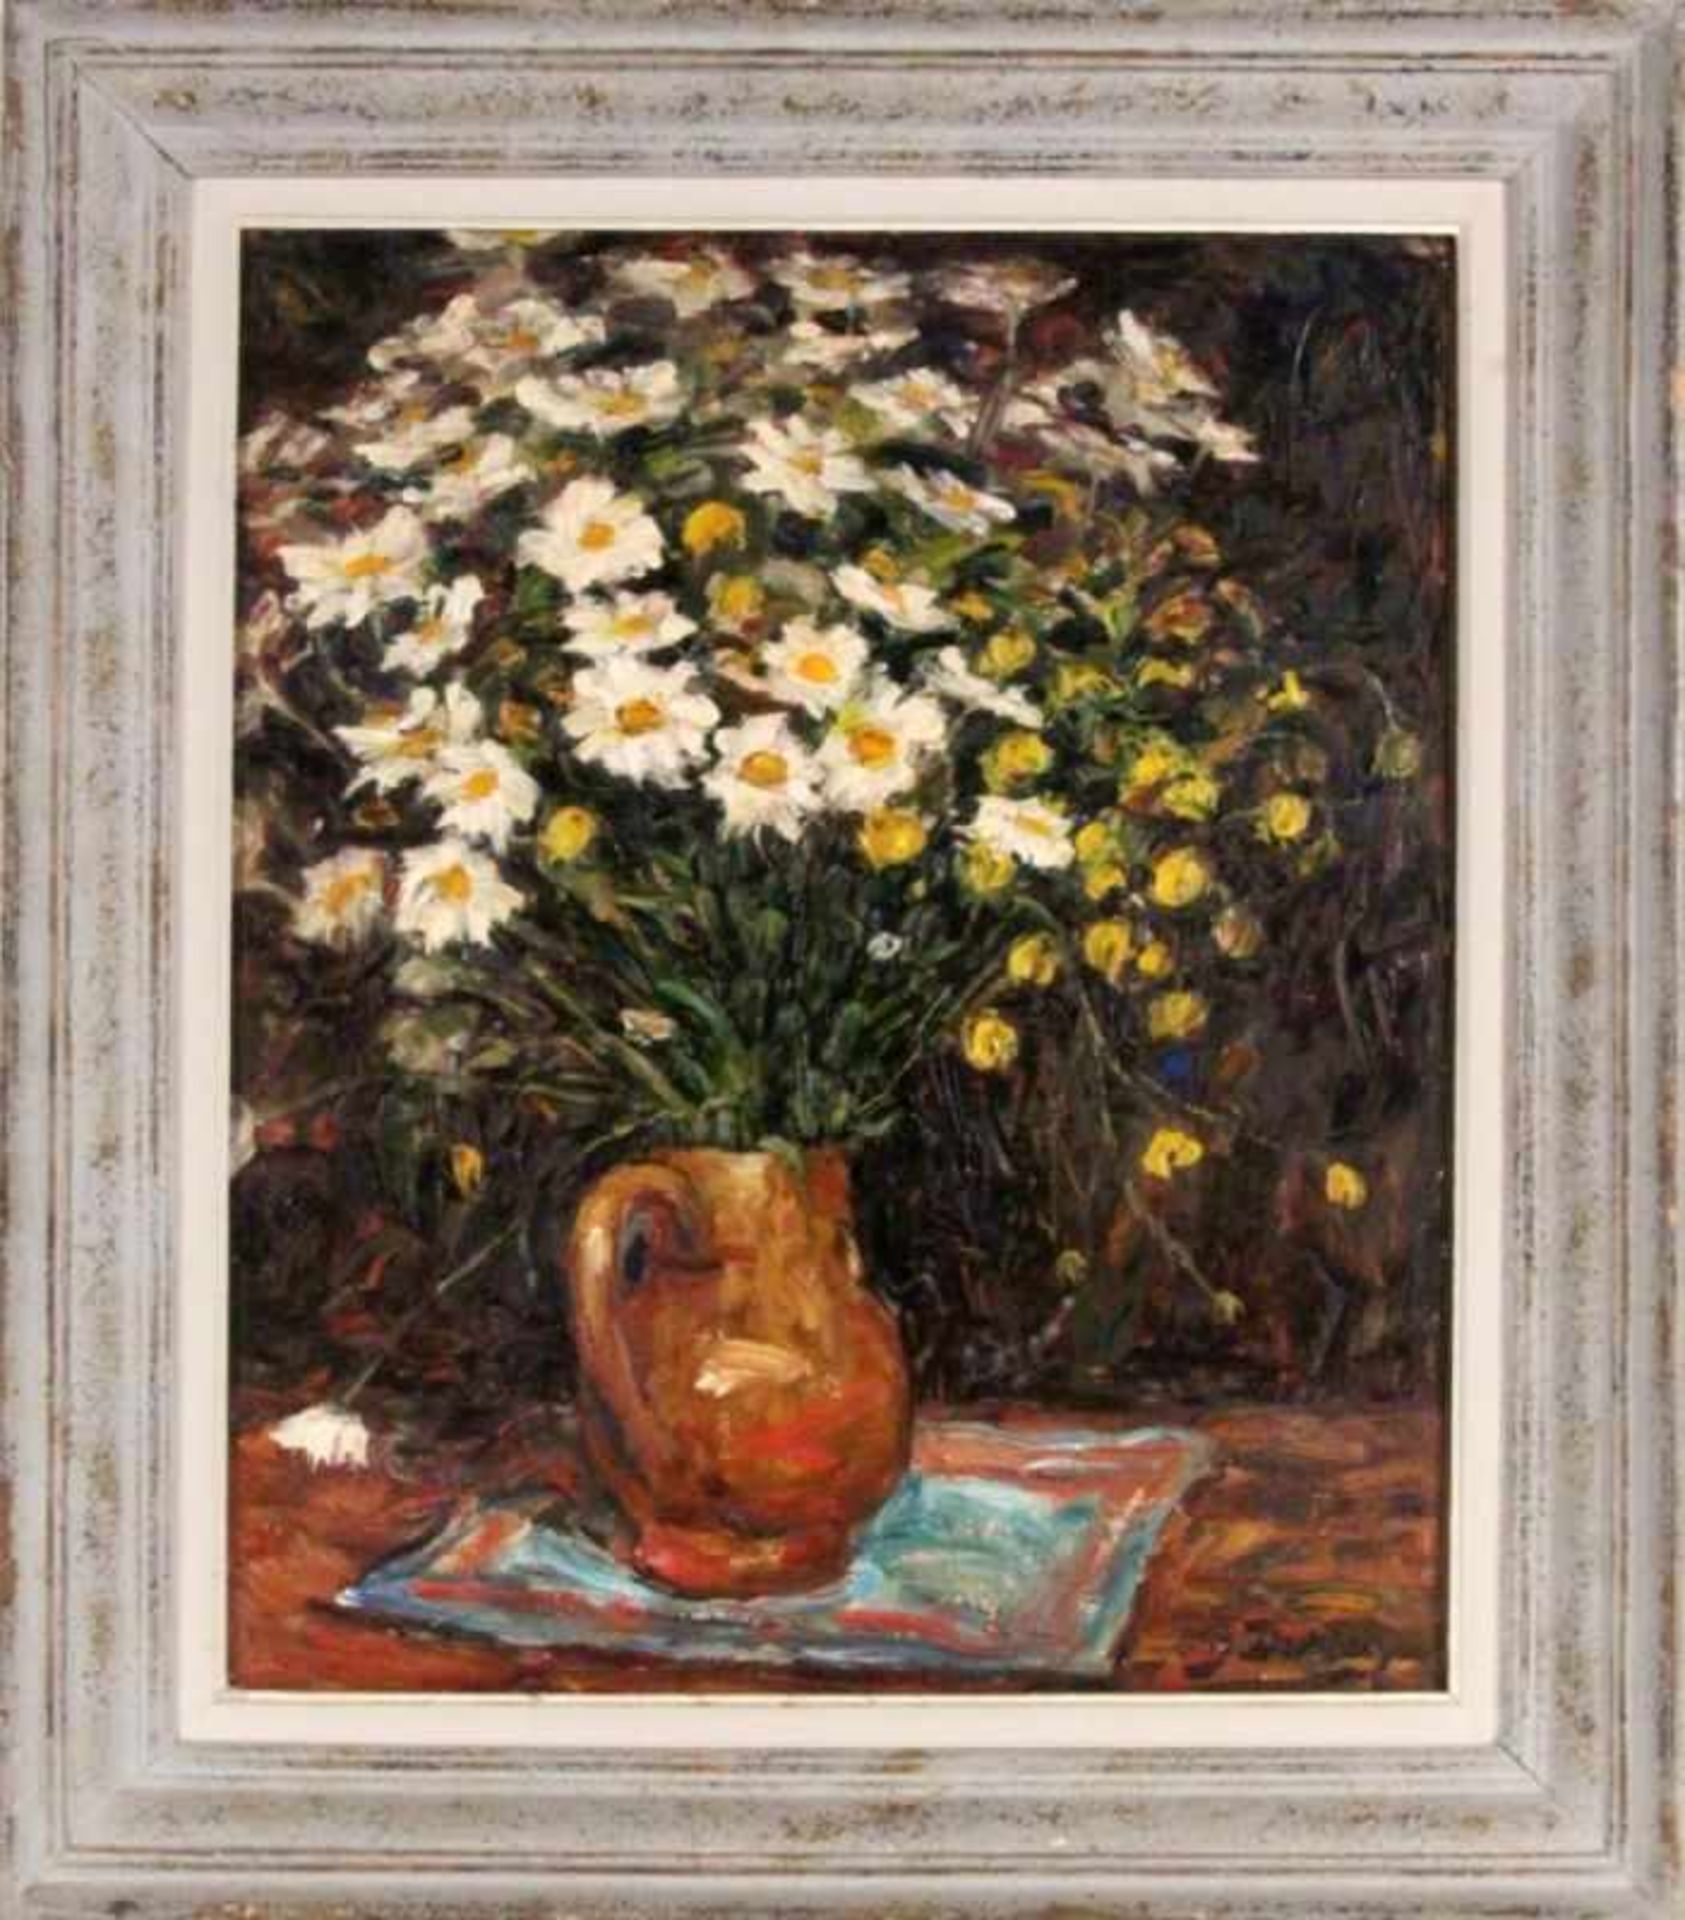 DURIEZ, JULESFrankreich 1900 - 1993 Blumen in der Vase. Öl/Holz, signiert. 65x54cm, Ra.DURIEZ, - Bild 2 aus 3